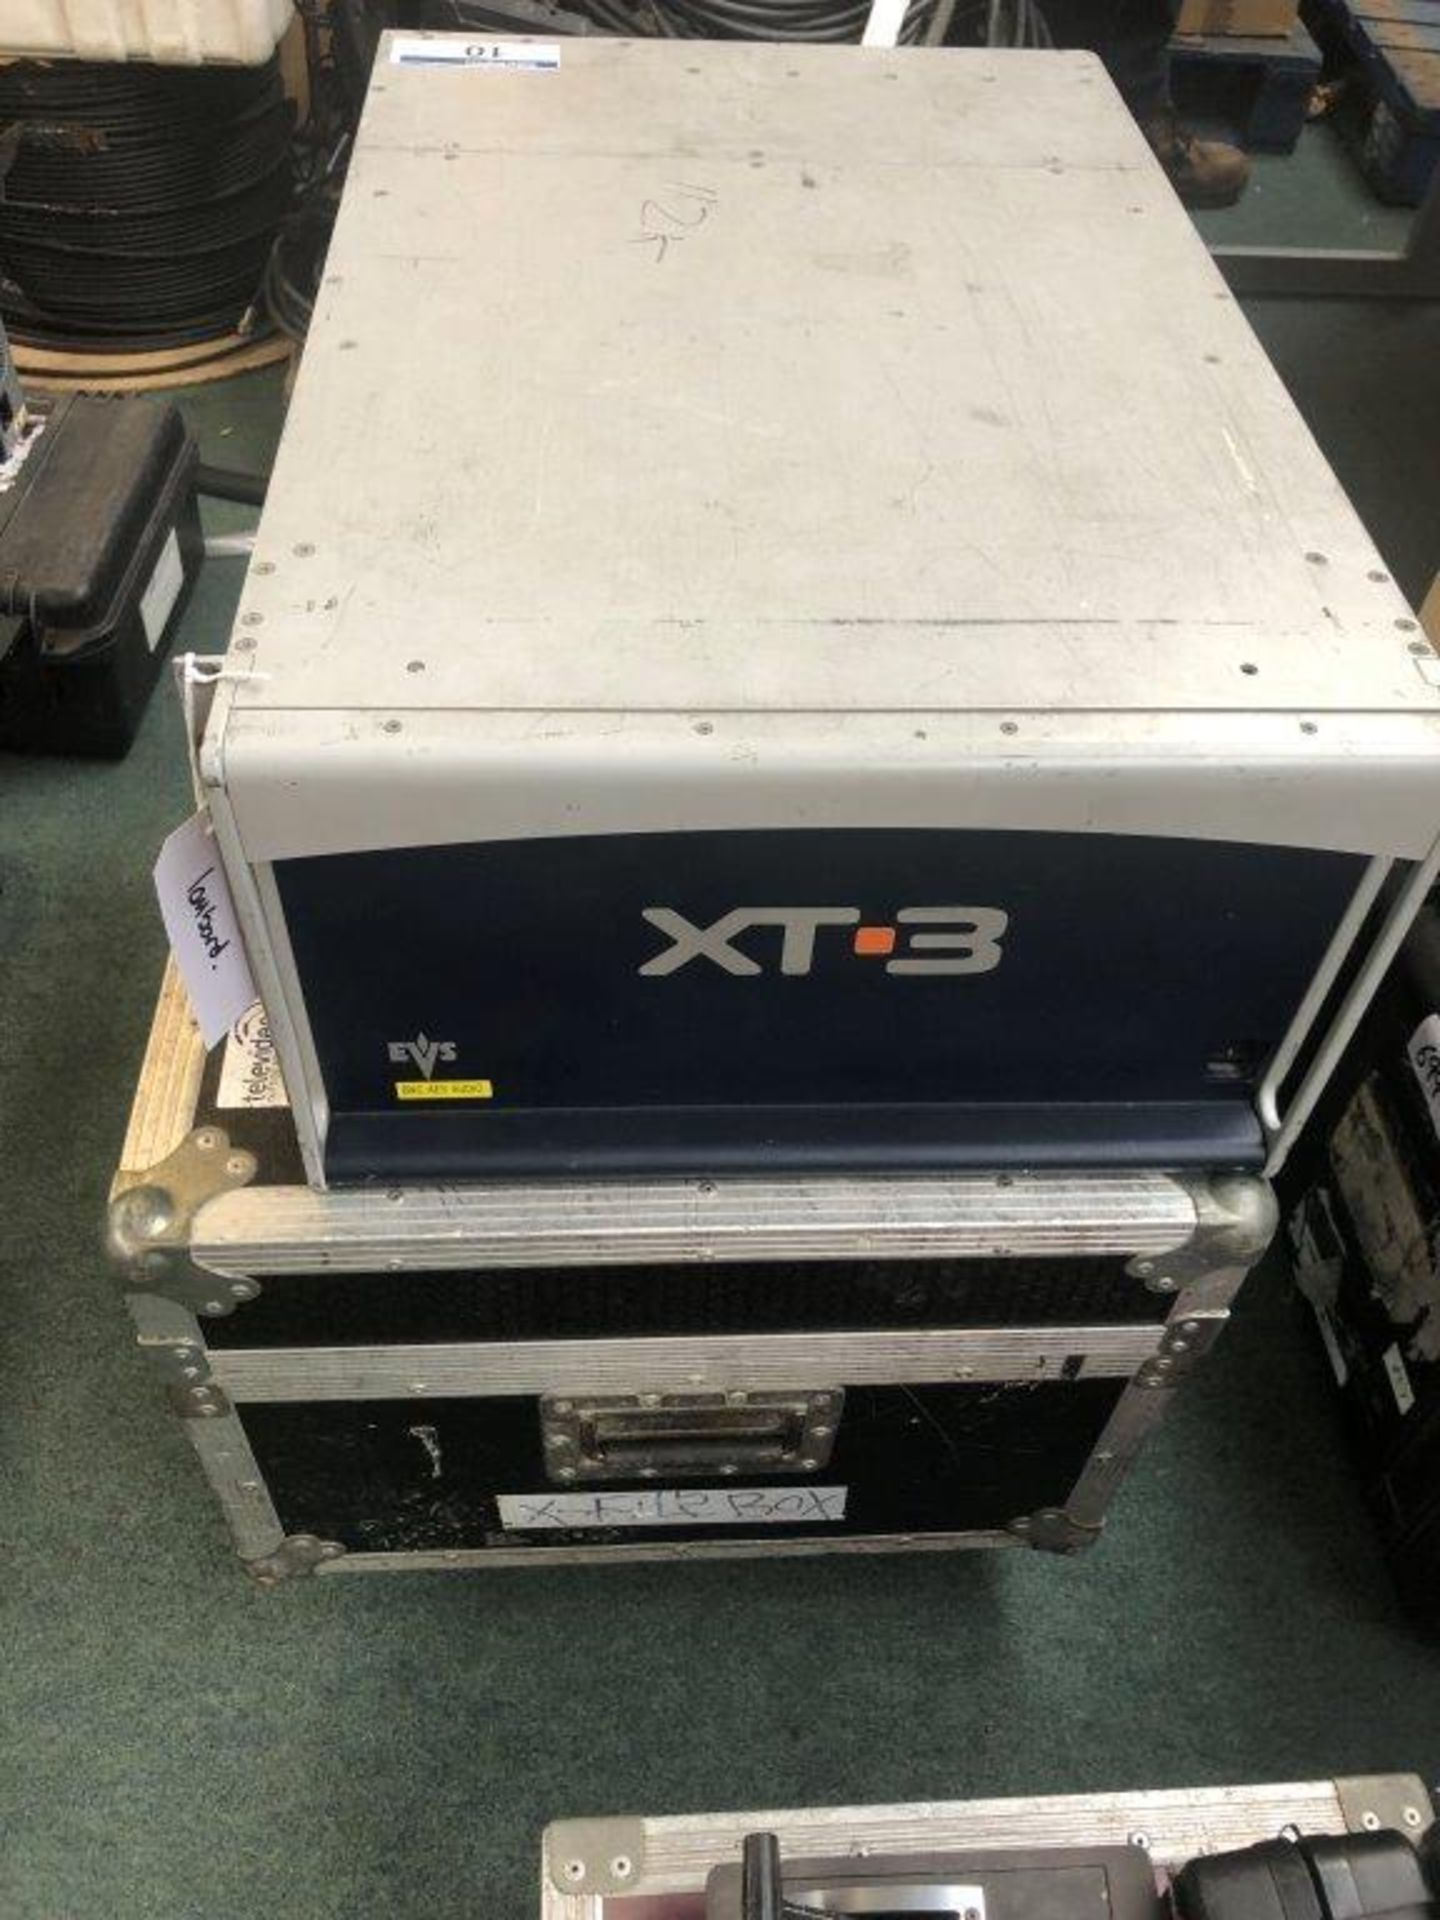 EVS XT-3 File Server Serial Number A119550 (In Flight Case)